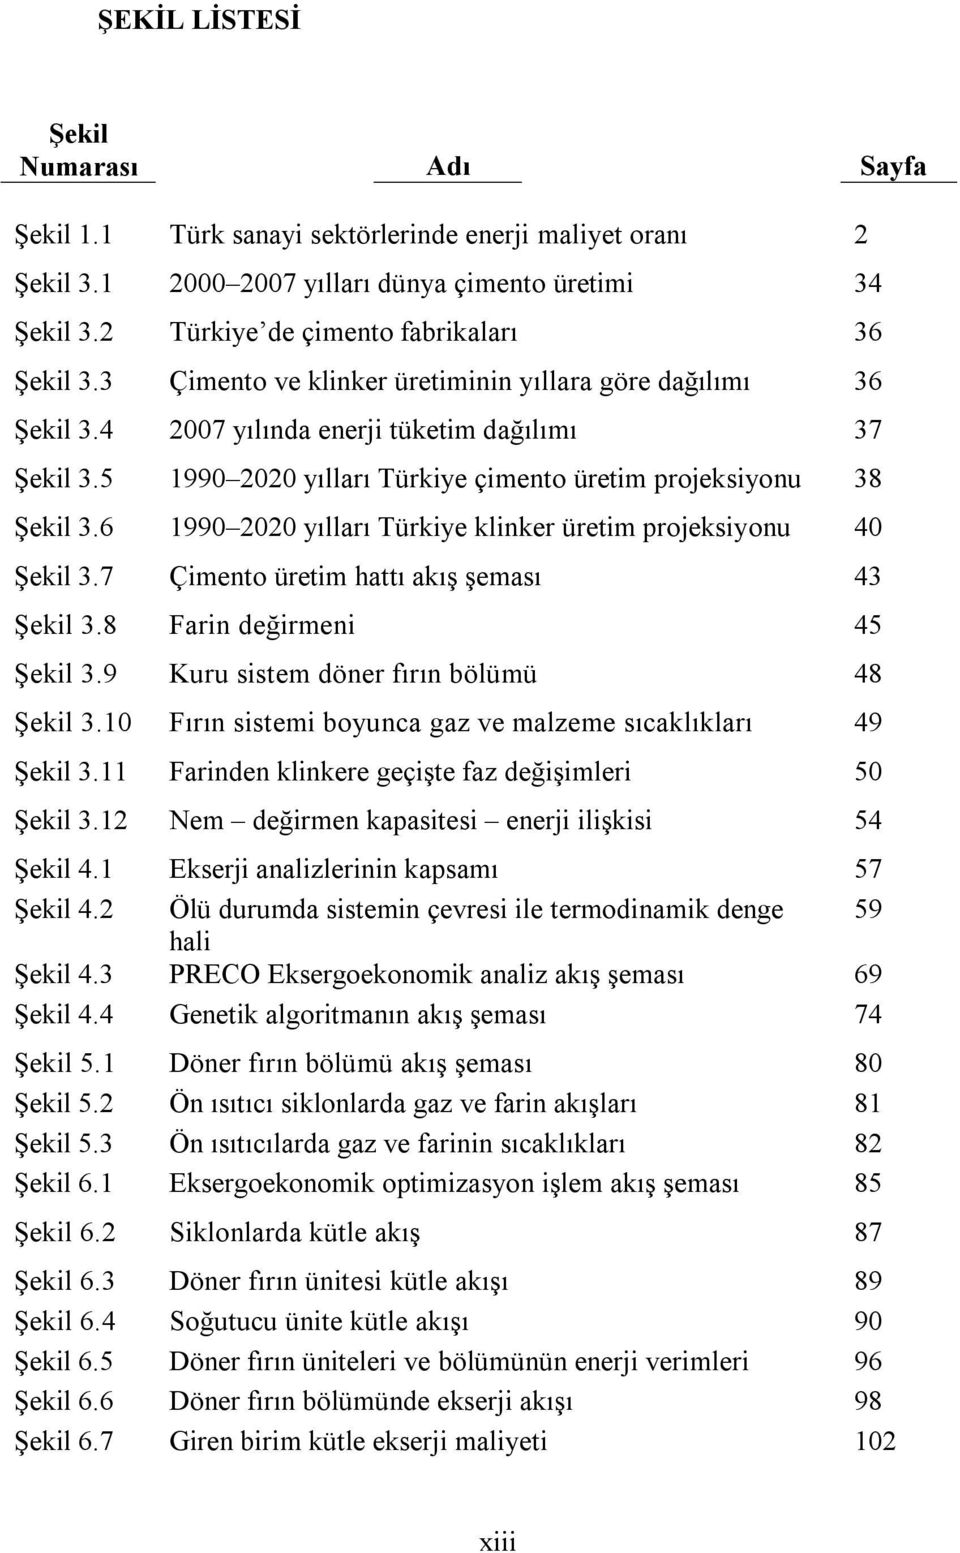 5 1990 2020 yılları Türkiye çimento üretim projeksiyonu 38 Şekil 3.6 1990 2020 yılları Türkiye klinker üretim projeksiyonu 40 Şekil 3.7 Çimento üretim hattı akış şeması 43 Şekil 3.